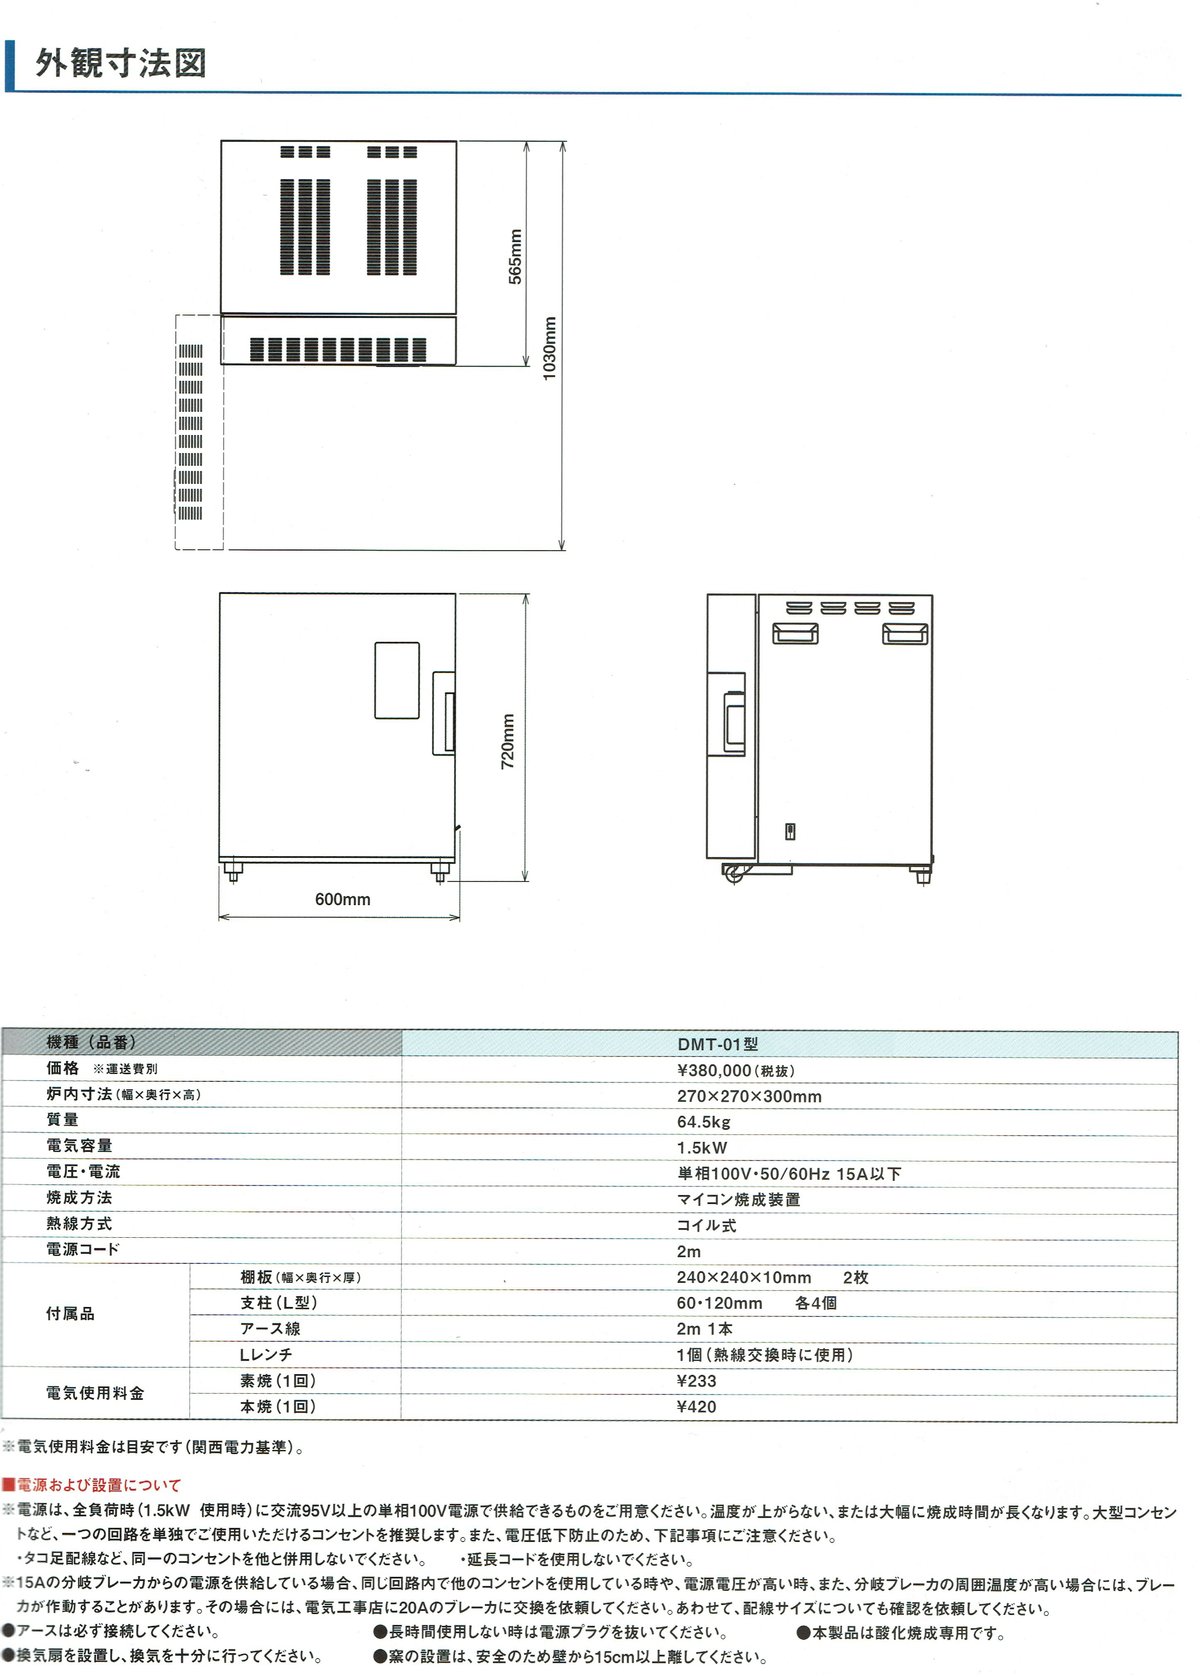 日本電産シンポ 電気窯DMT-01 御見積もり致します。 陶芸道具むらかみ